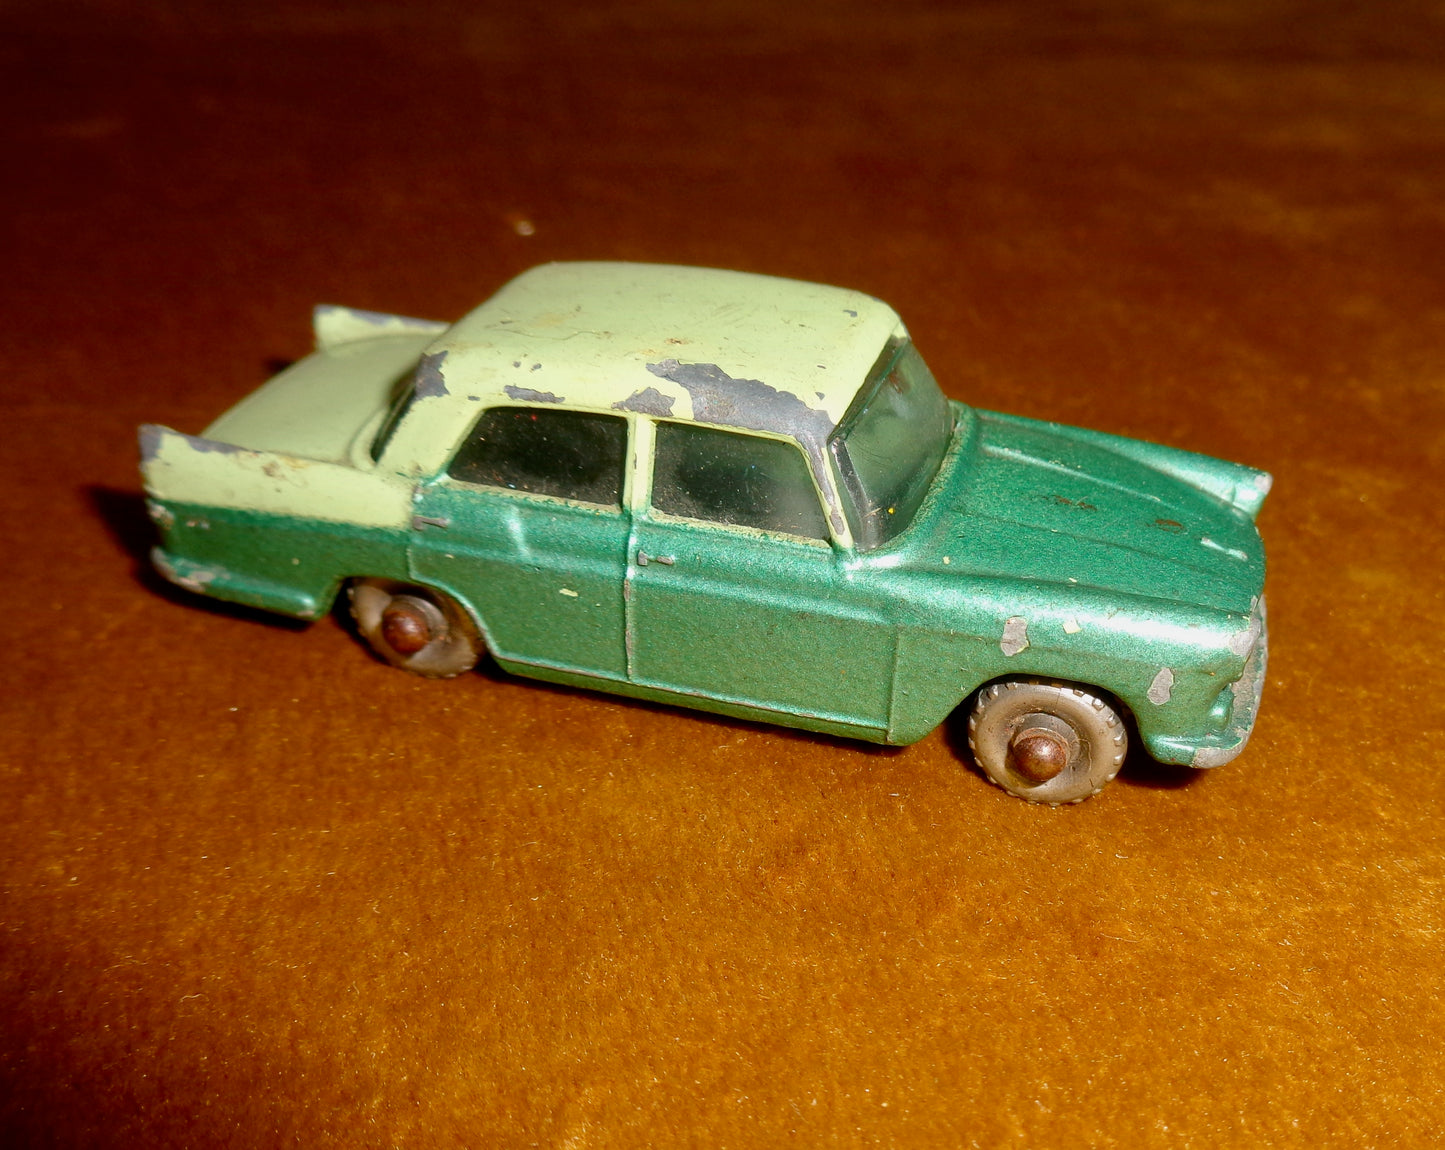 1961 Lesney Matchbox Model No.29 Austin A55 Cambridge 1-75 Series